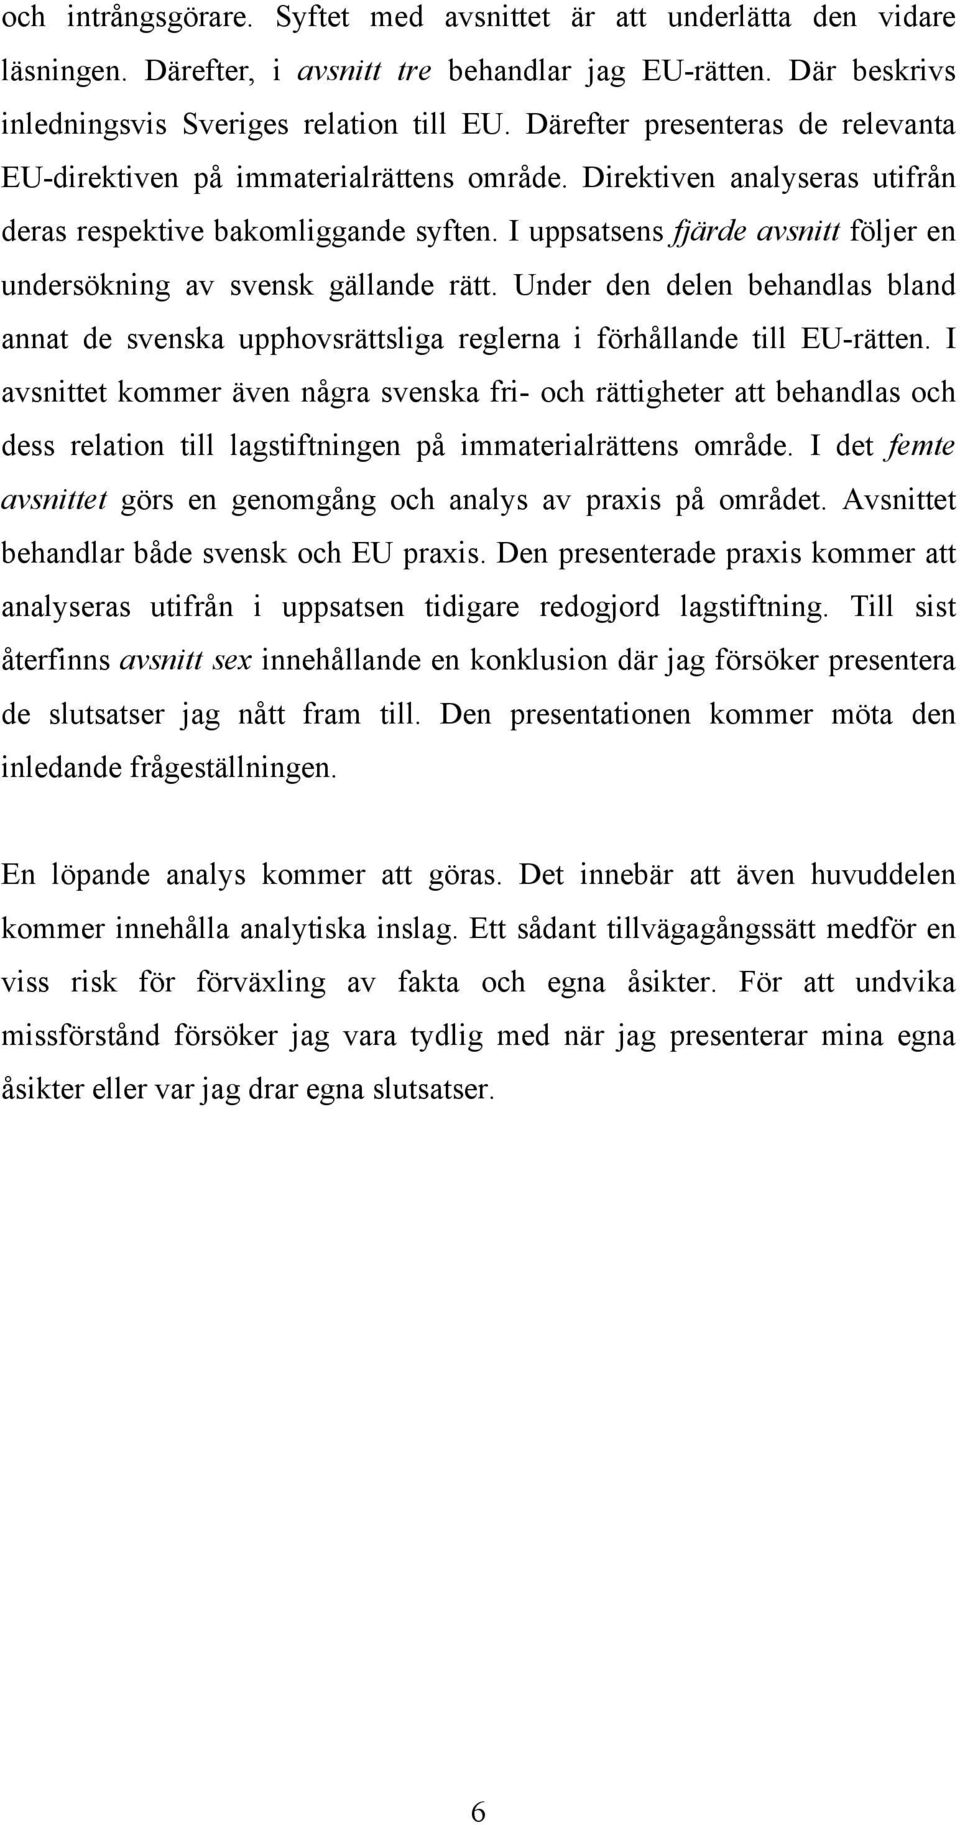 I uppsatsens fjärde avsnitt följer en undersökning av svensk gällande rätt. Under den delen behandlas bland annat de svenska upphovsrättsliga reglerna i förhållande till EU-rätten.